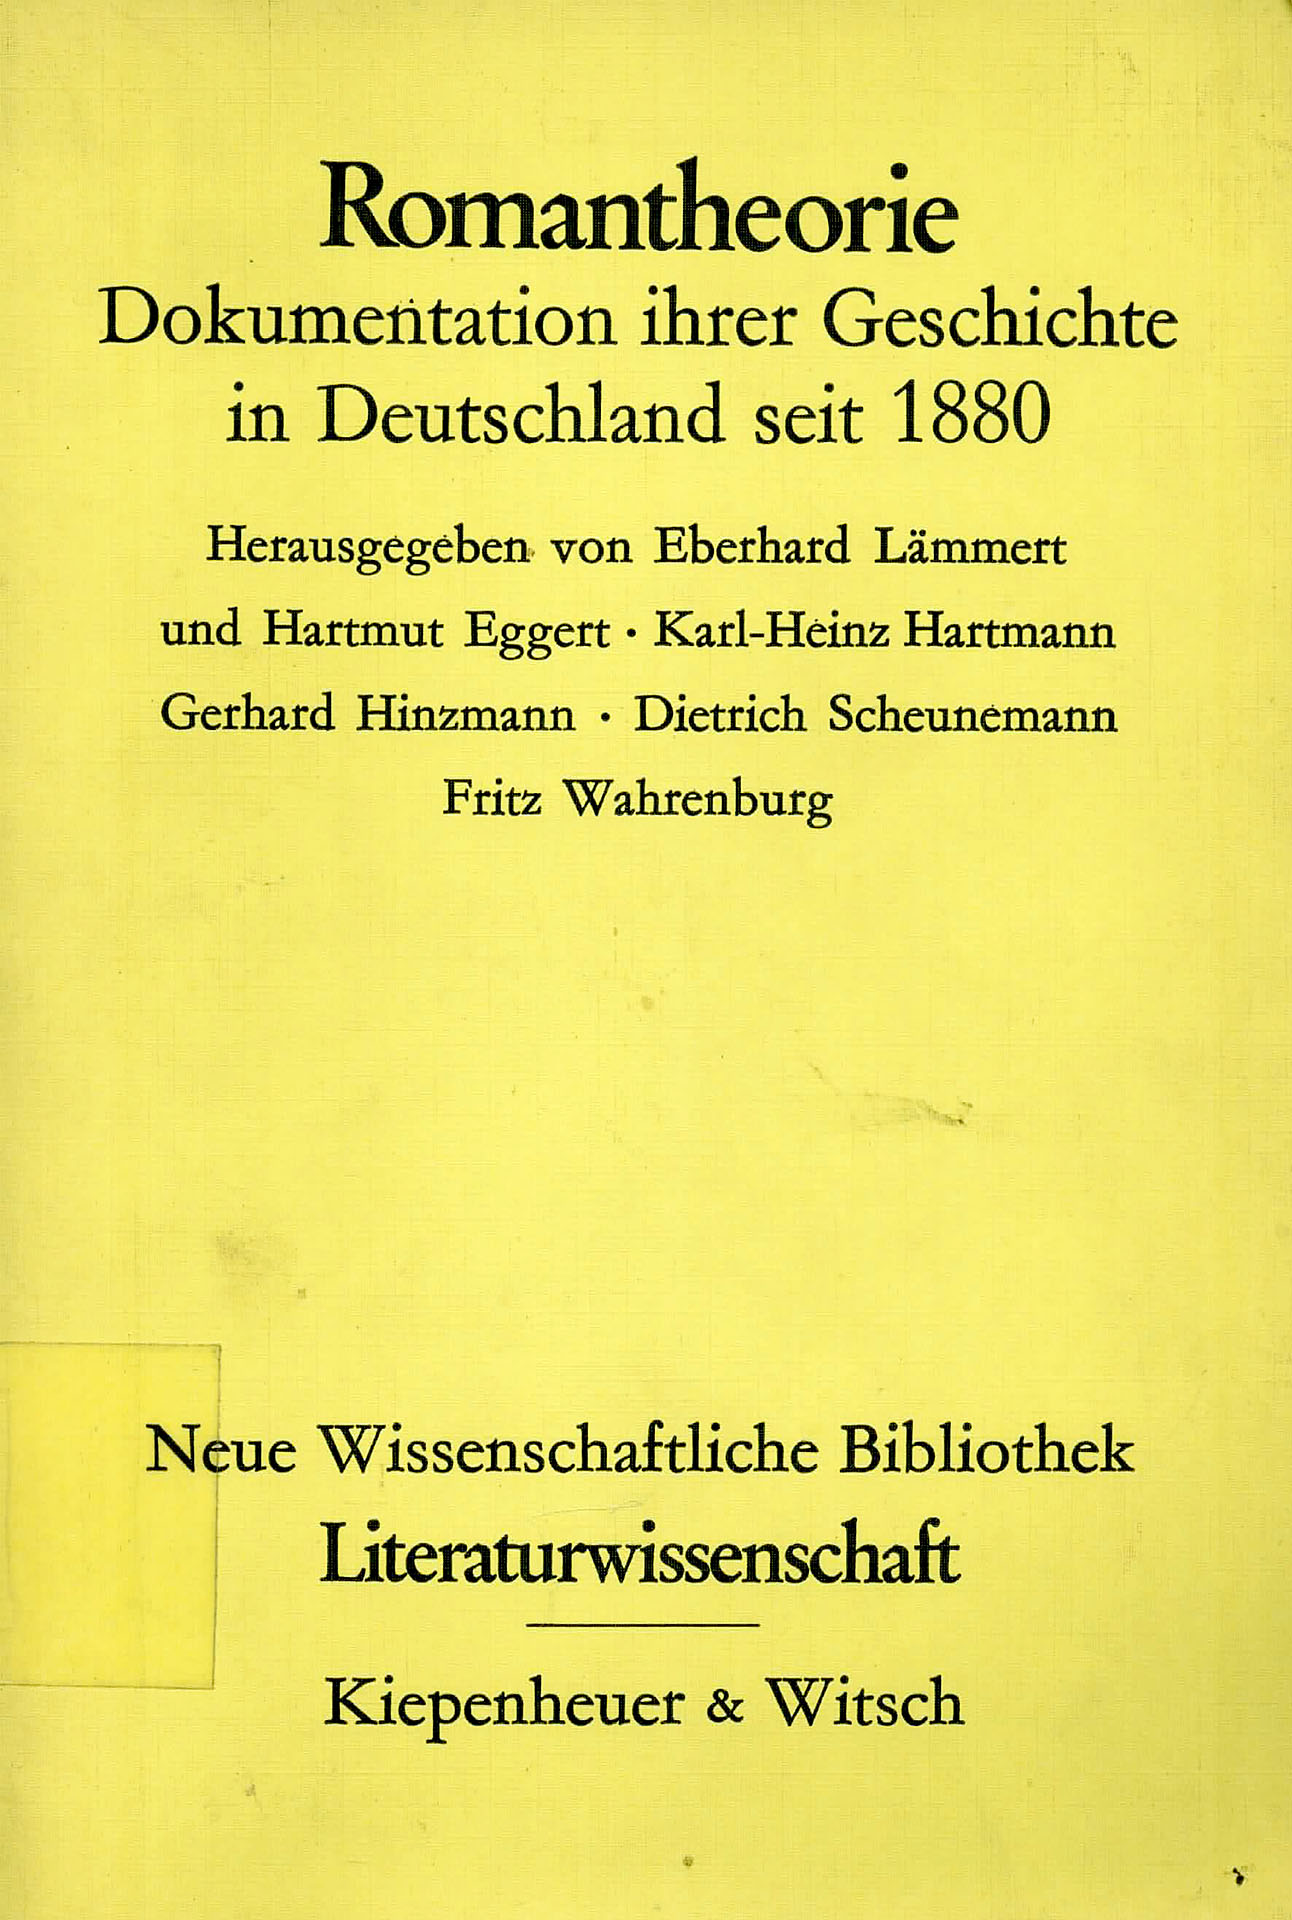 Romantheorie - Lämmert, Eberhard u. a.